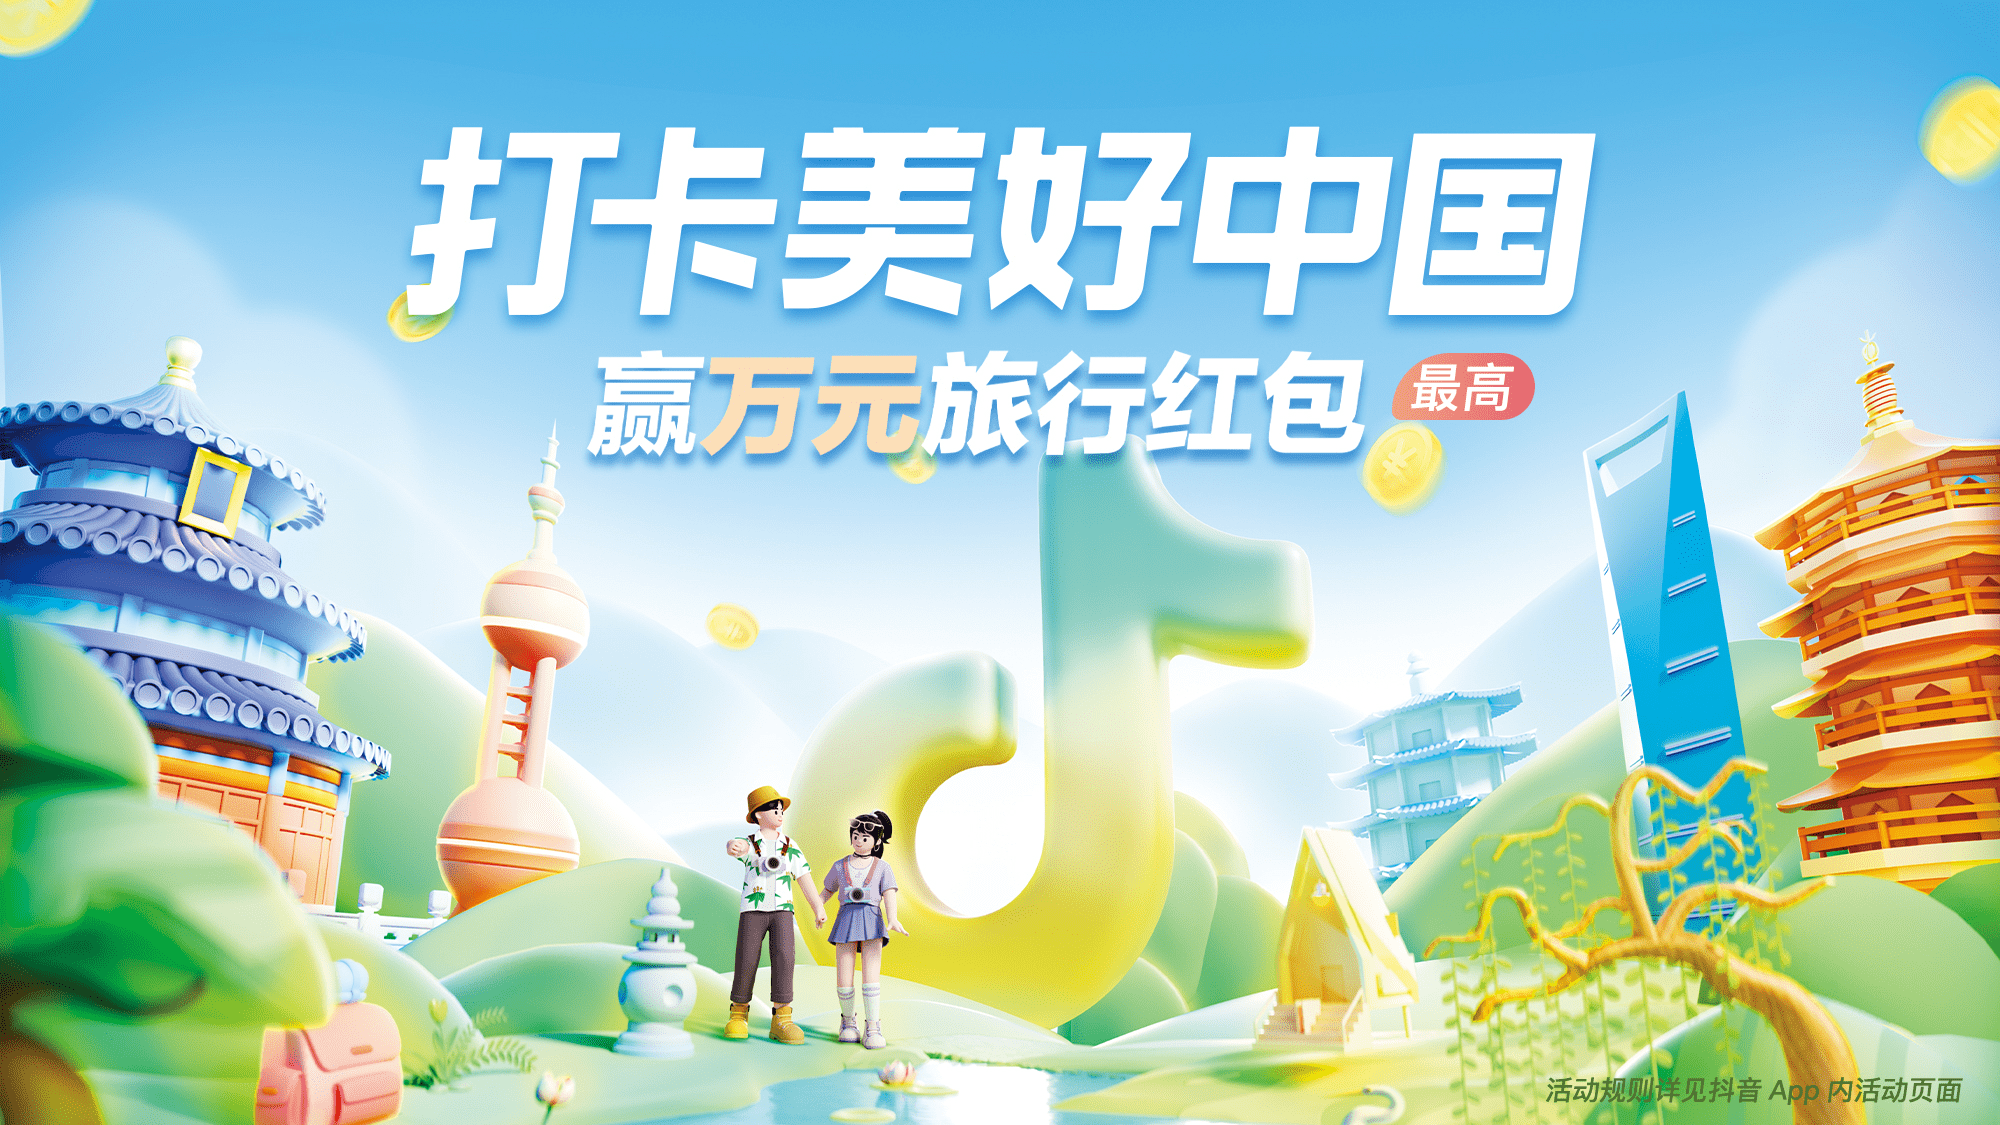 抖音国庆推出“打卡美好中国”活动 多元生态开启出游新体验